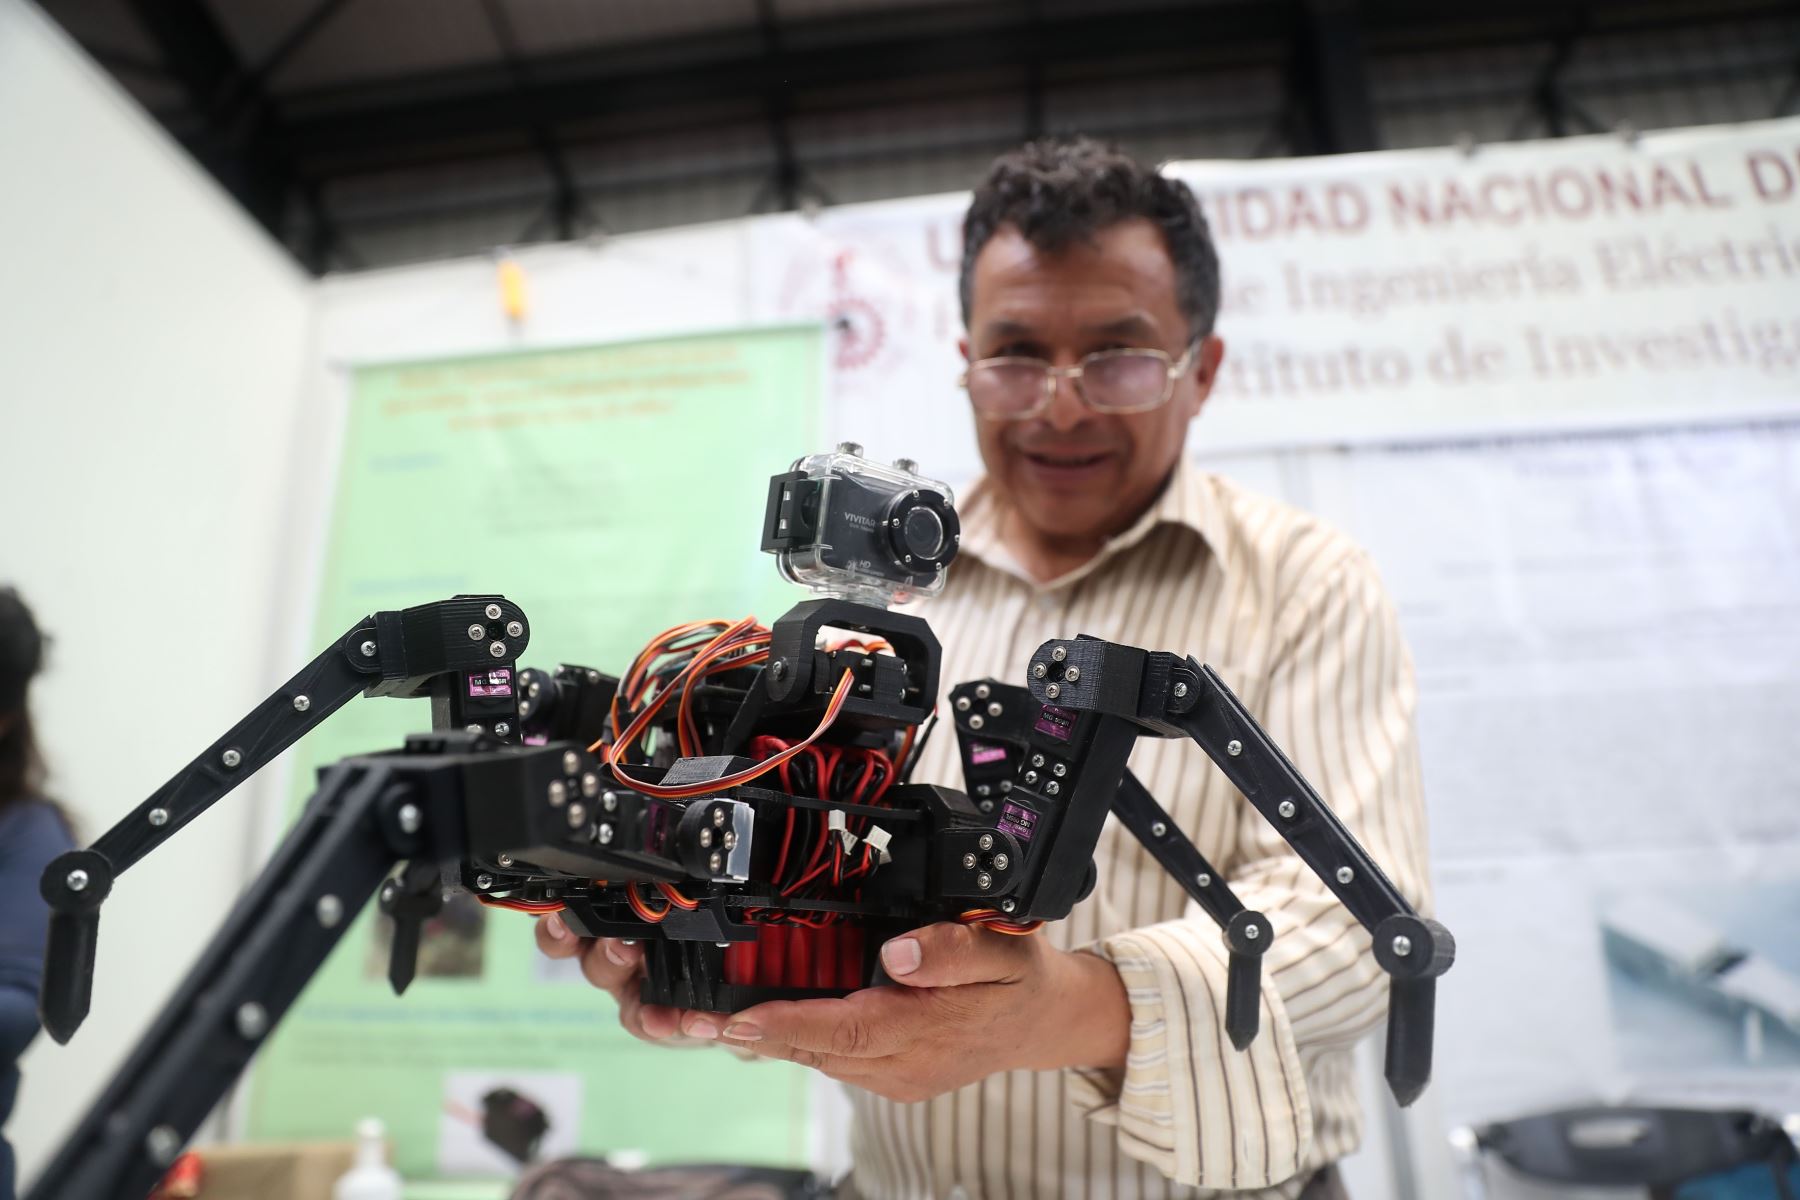 El robot hecho en Perú fue uno de los principales atractivos de la Expoferia Tecnológica UNICTEC - 2023. Foto:ANDINA/Ricardo Cuba